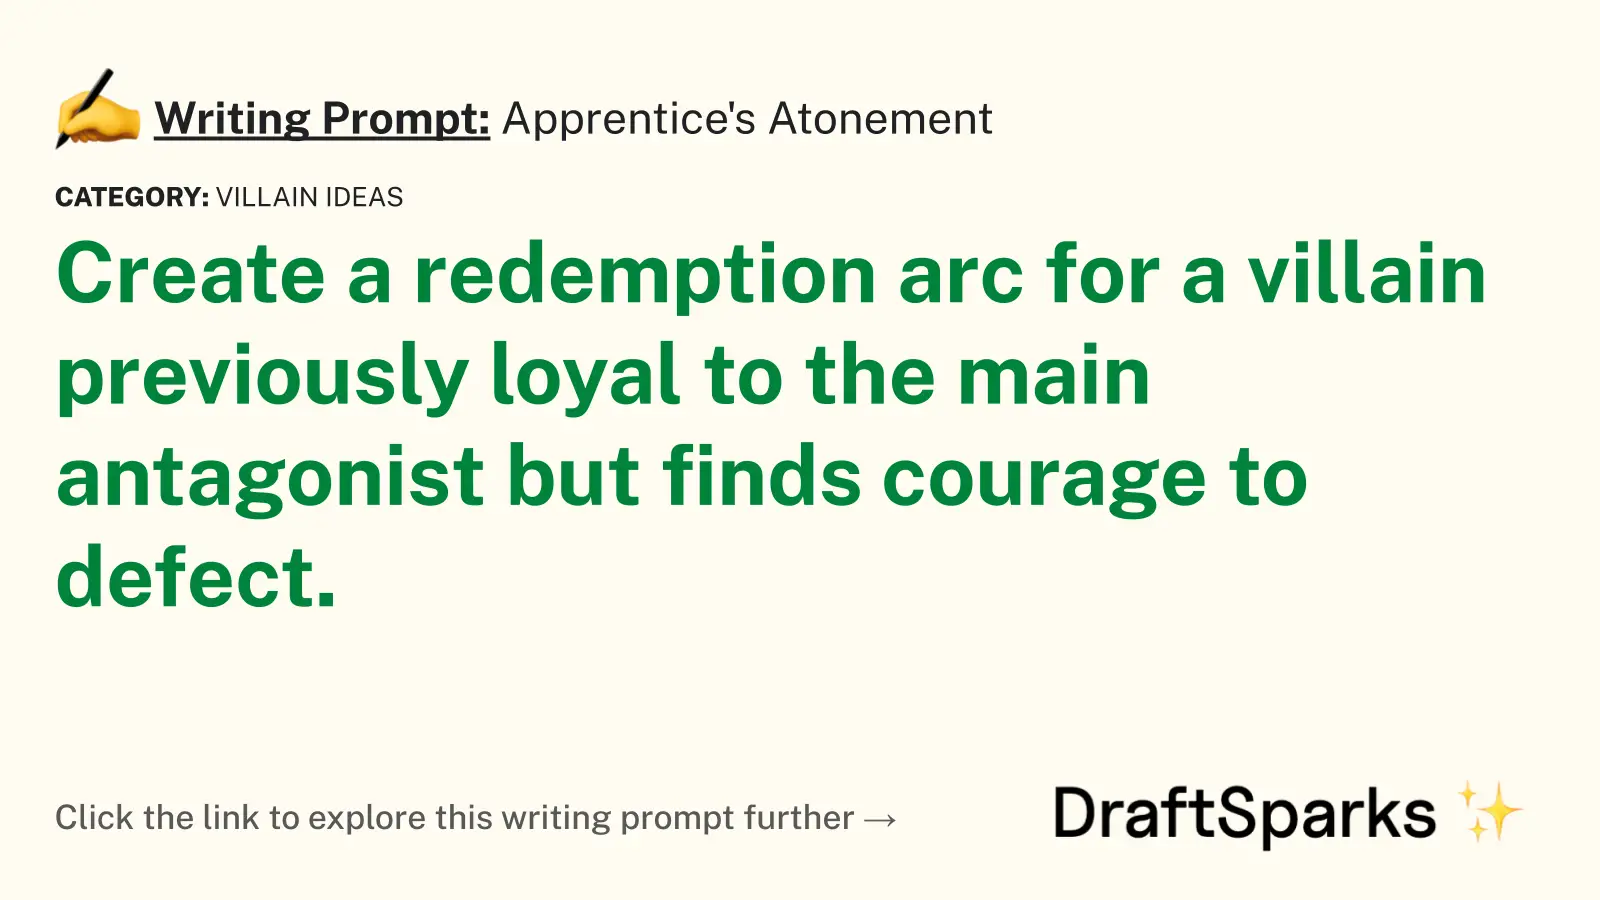 Apprentice’s Atonement